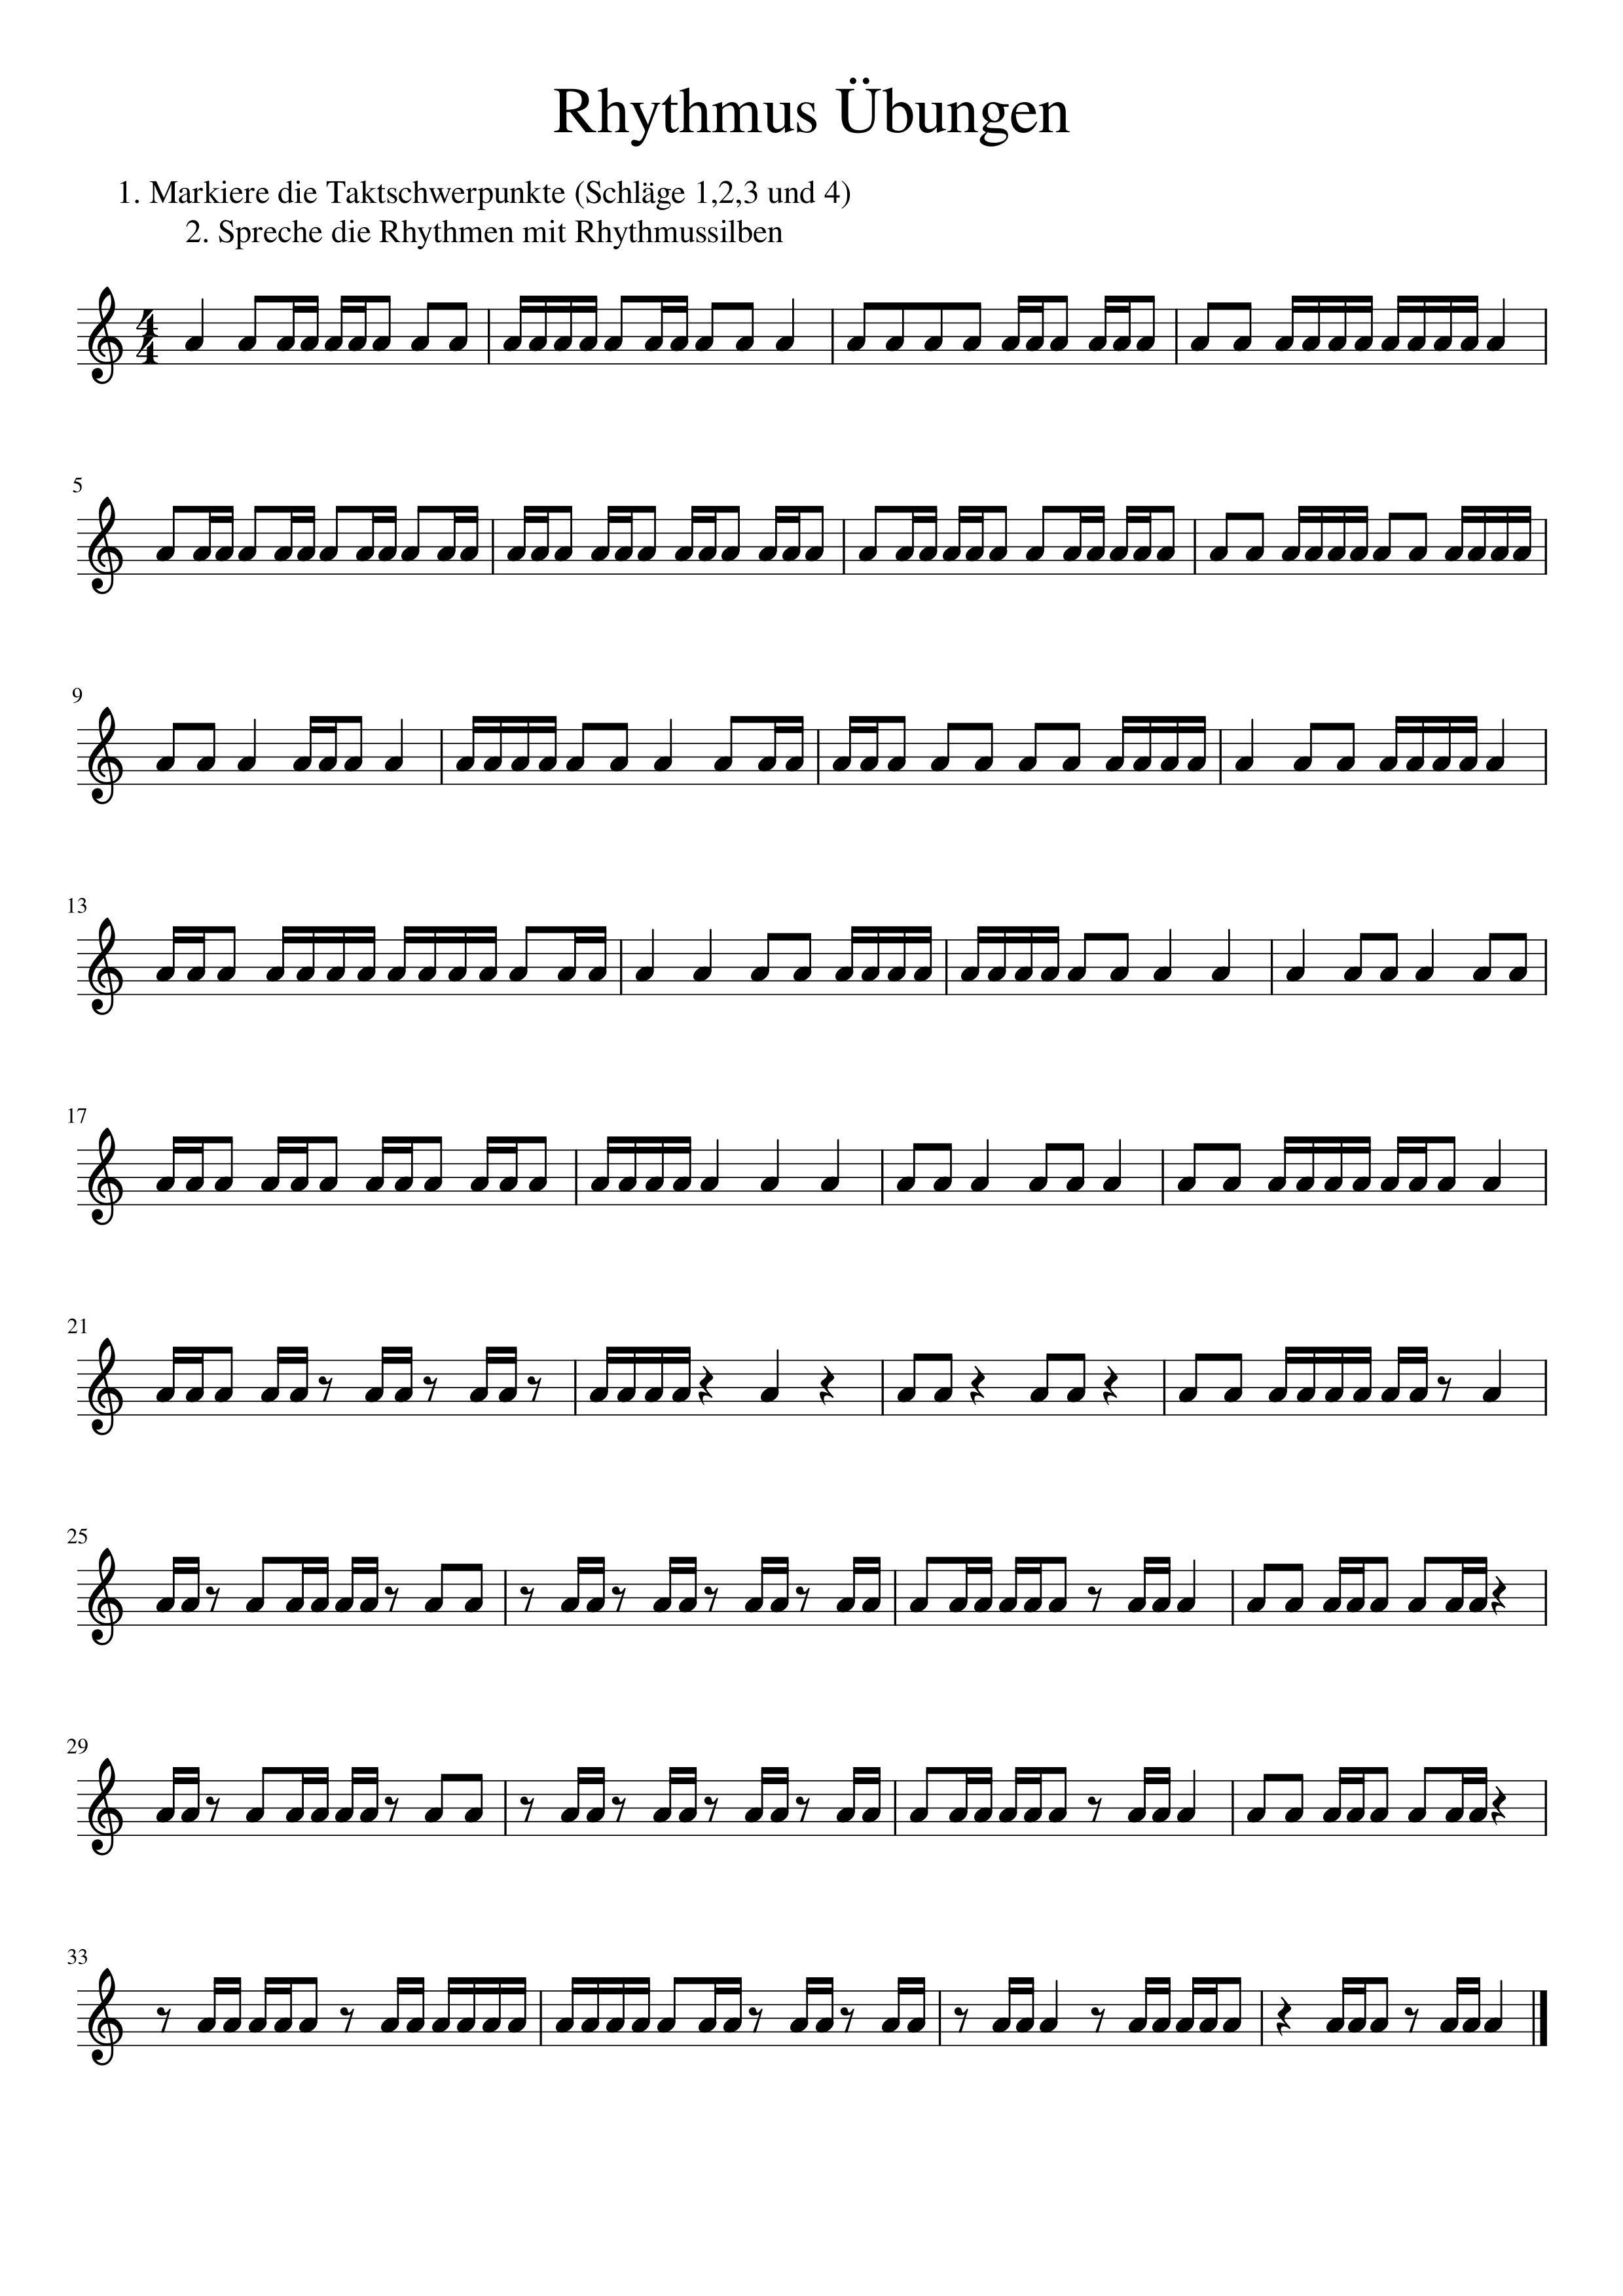 Rhythmusubungen 16tel Ohne Synkopen Unterrichtsmaterial Im Fach Musik Ubung Unterrichtsmaterial Silben